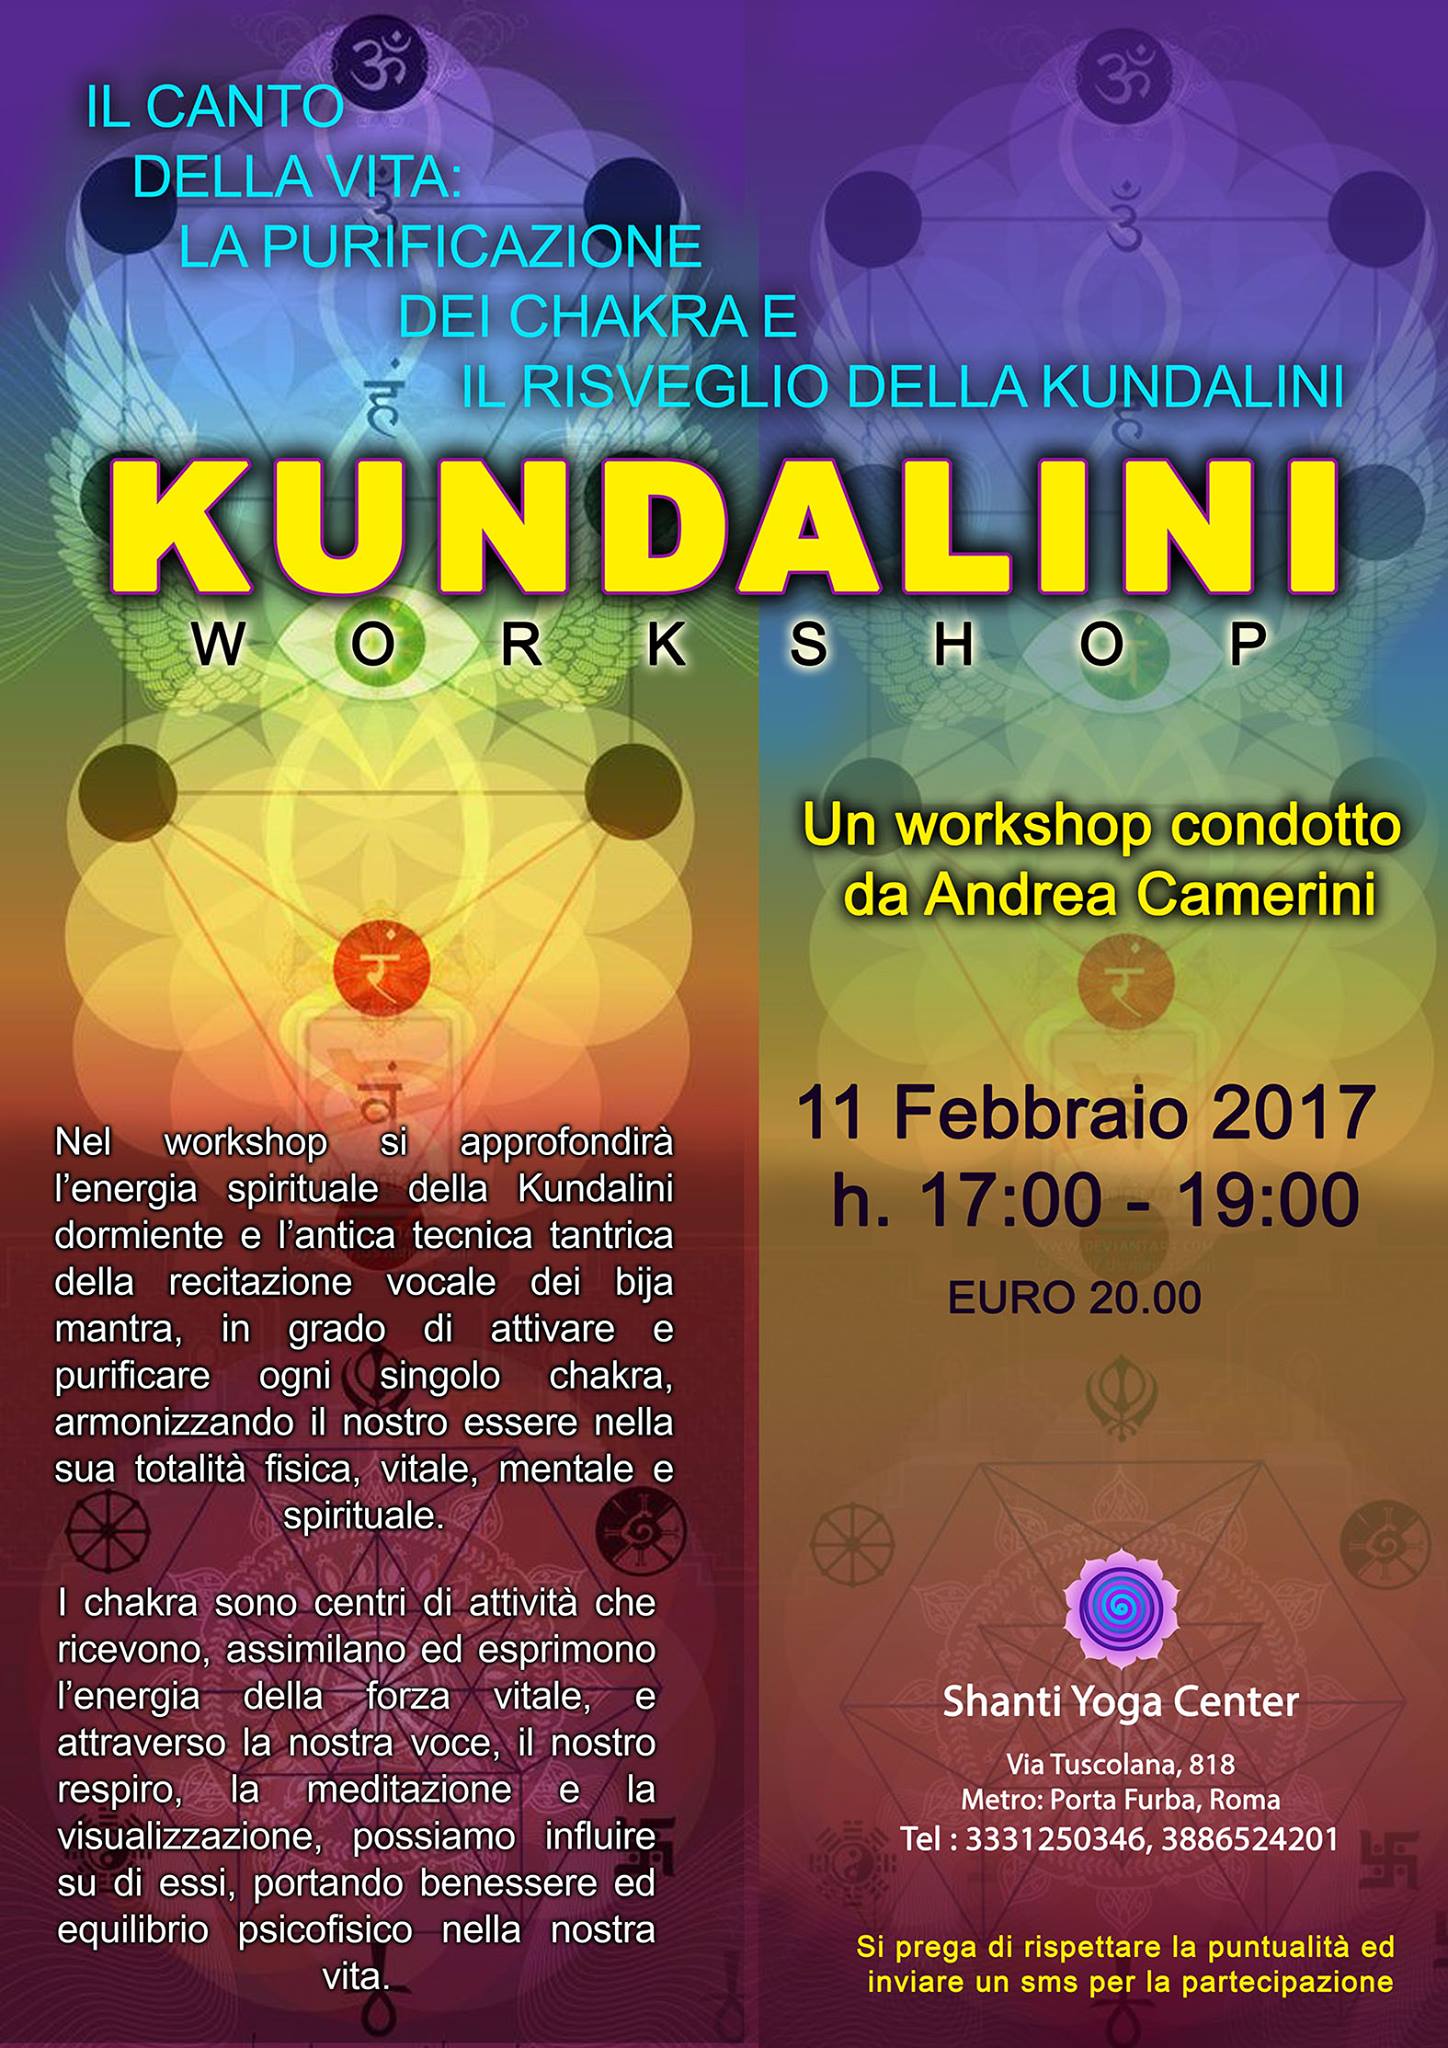 La Purificazione dei Chakra- Kundalini - Workshop di Andrea Camerini